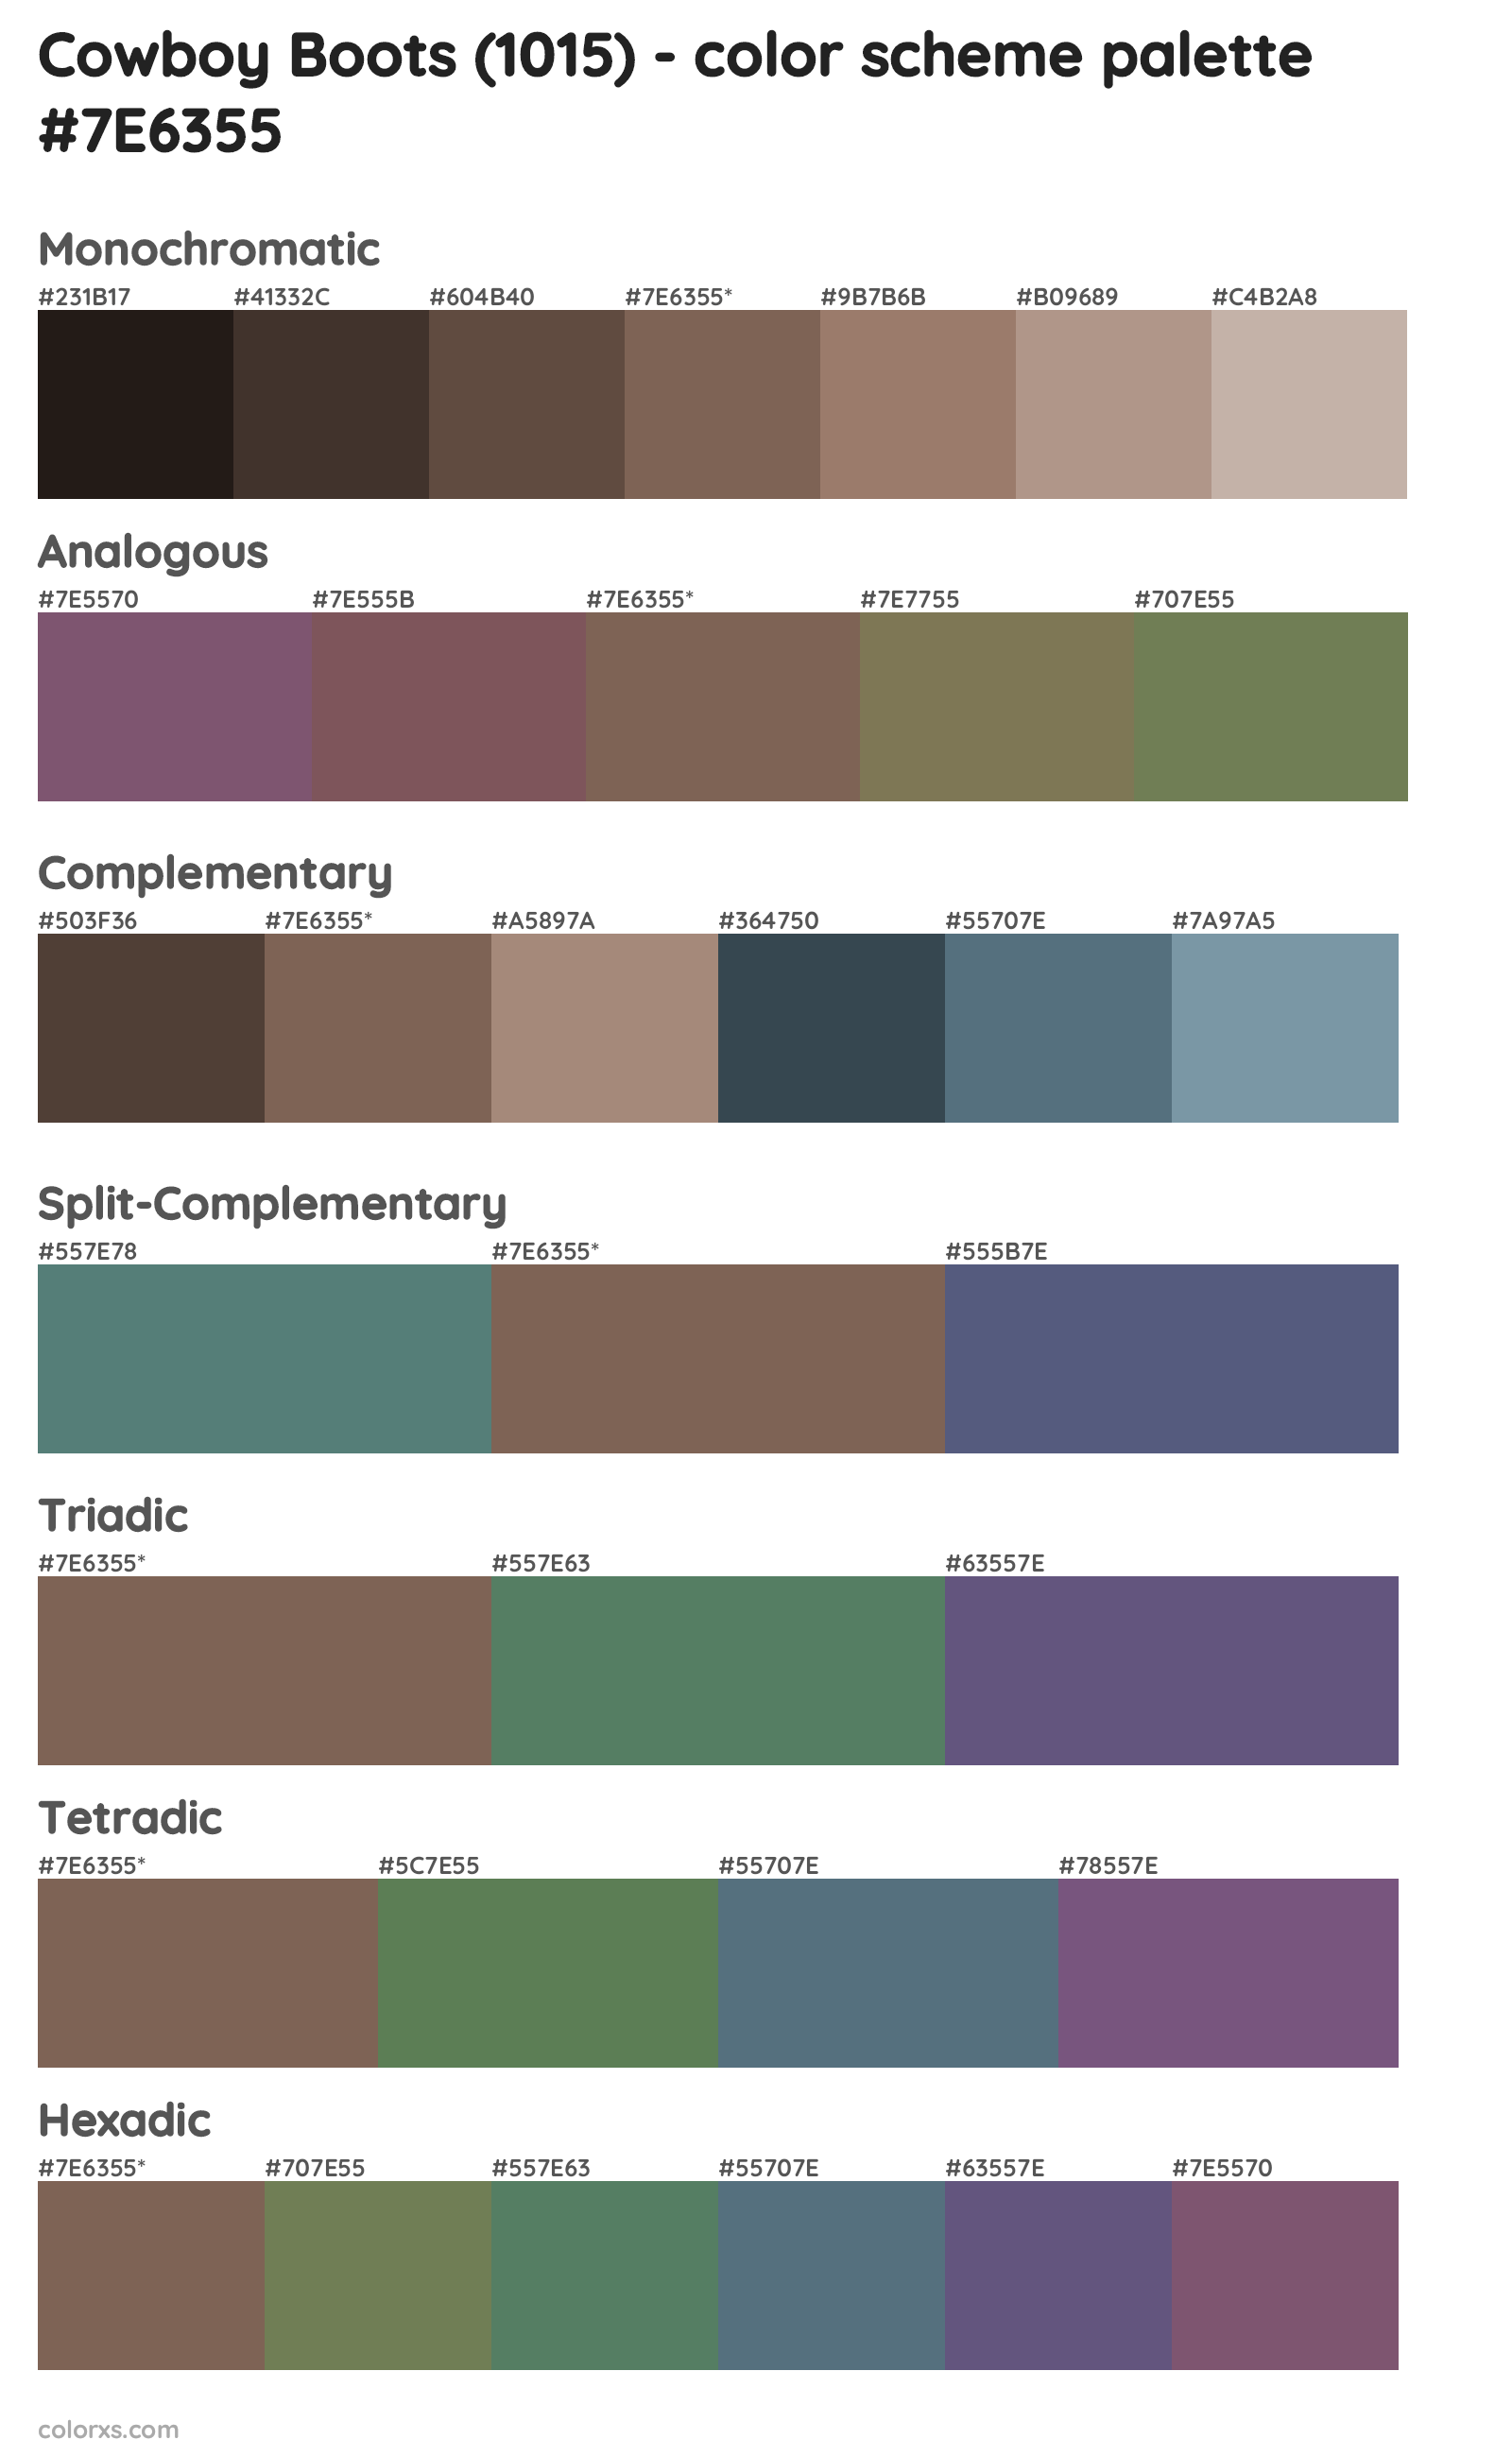 Cowboy Boots (1015) Color Scheme Palettes